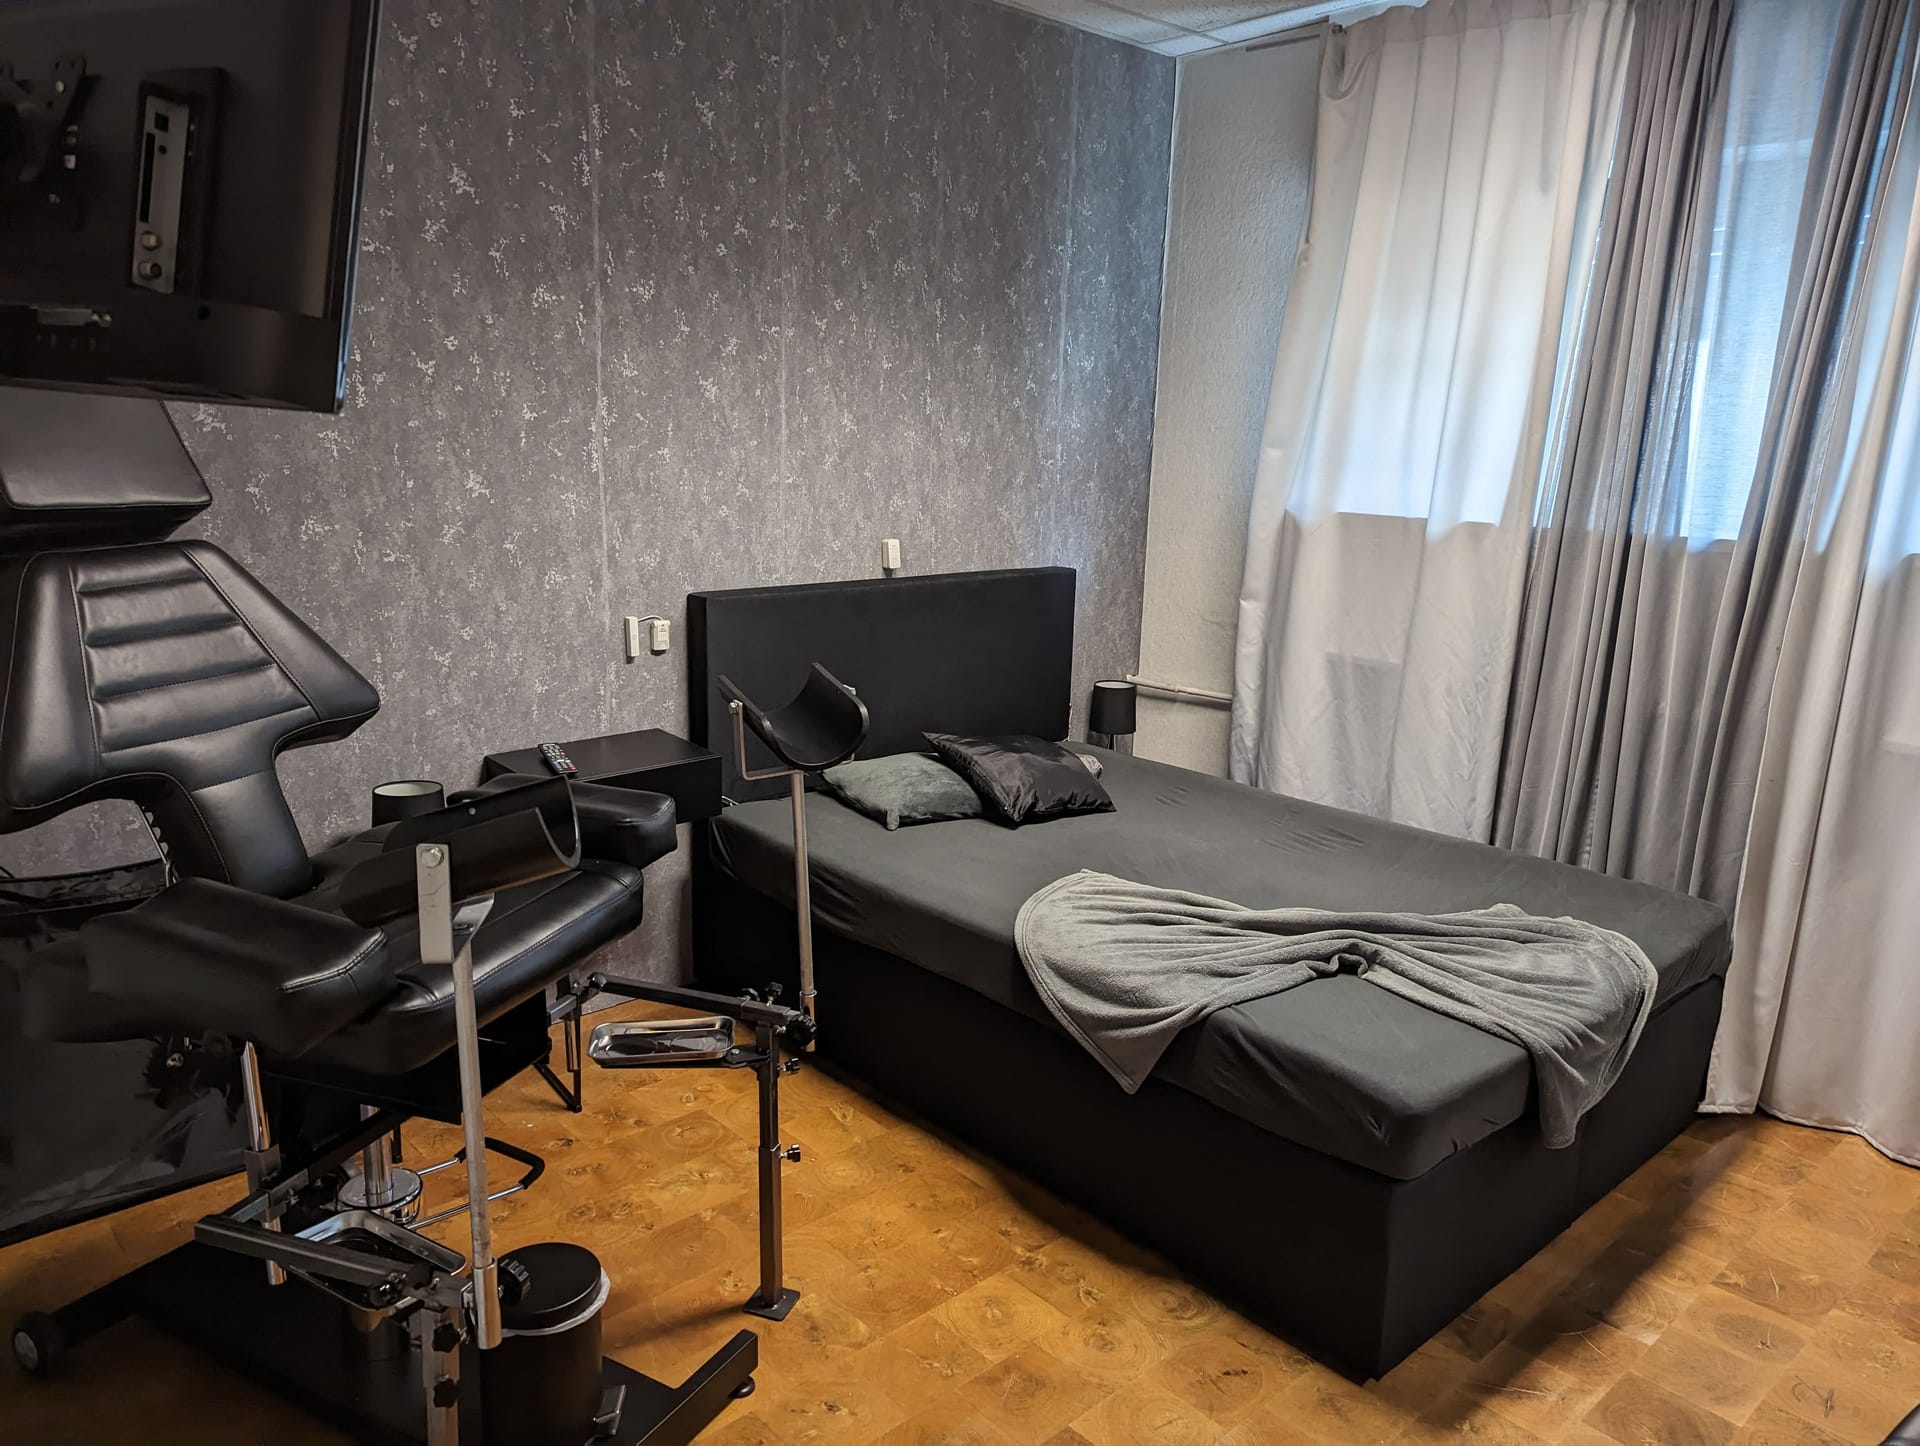 Ein Zimmer in der Frankfurter Terminwohnung: 550 Euro zahlen prostituierte hier für eine Woche.